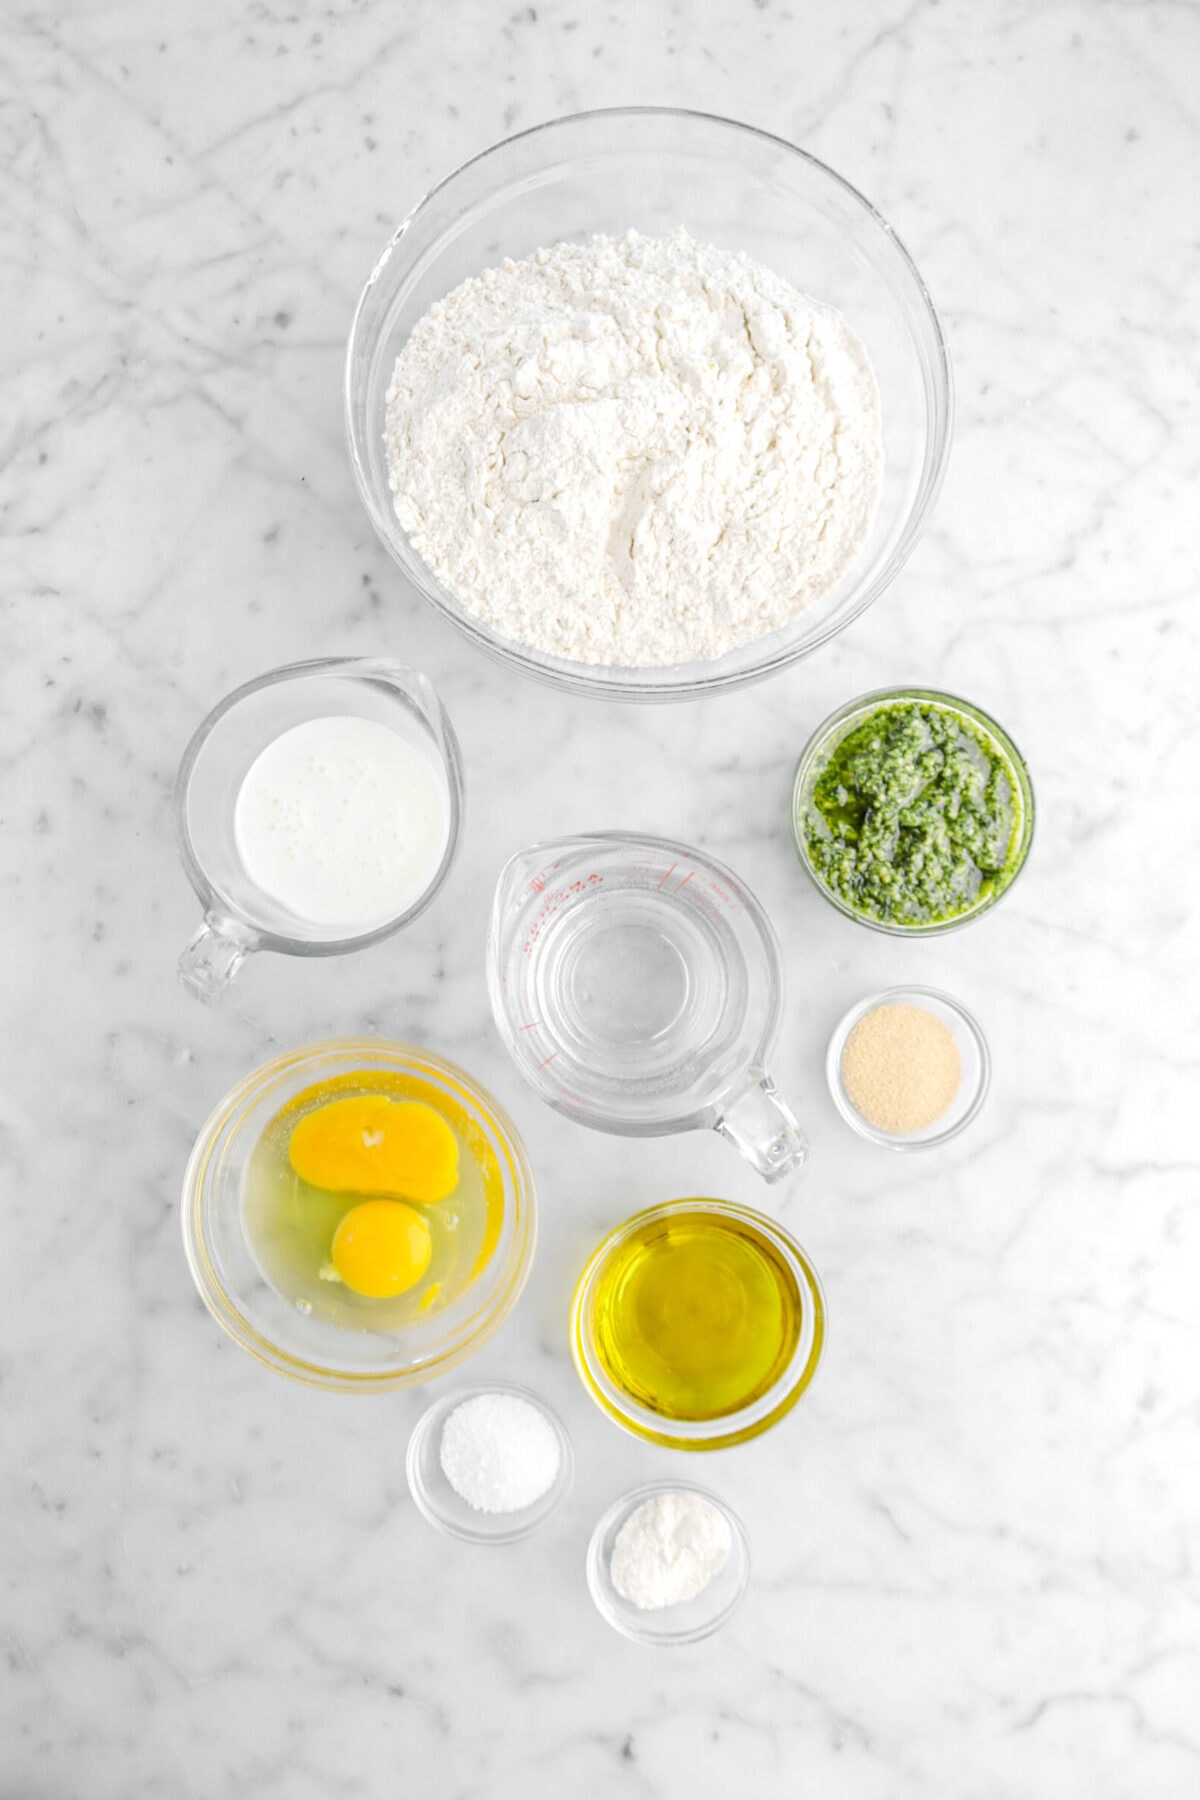 flour, milk, water, basil pesto, eggs, yeast, olive oil salt, and malt powder on marble surface.